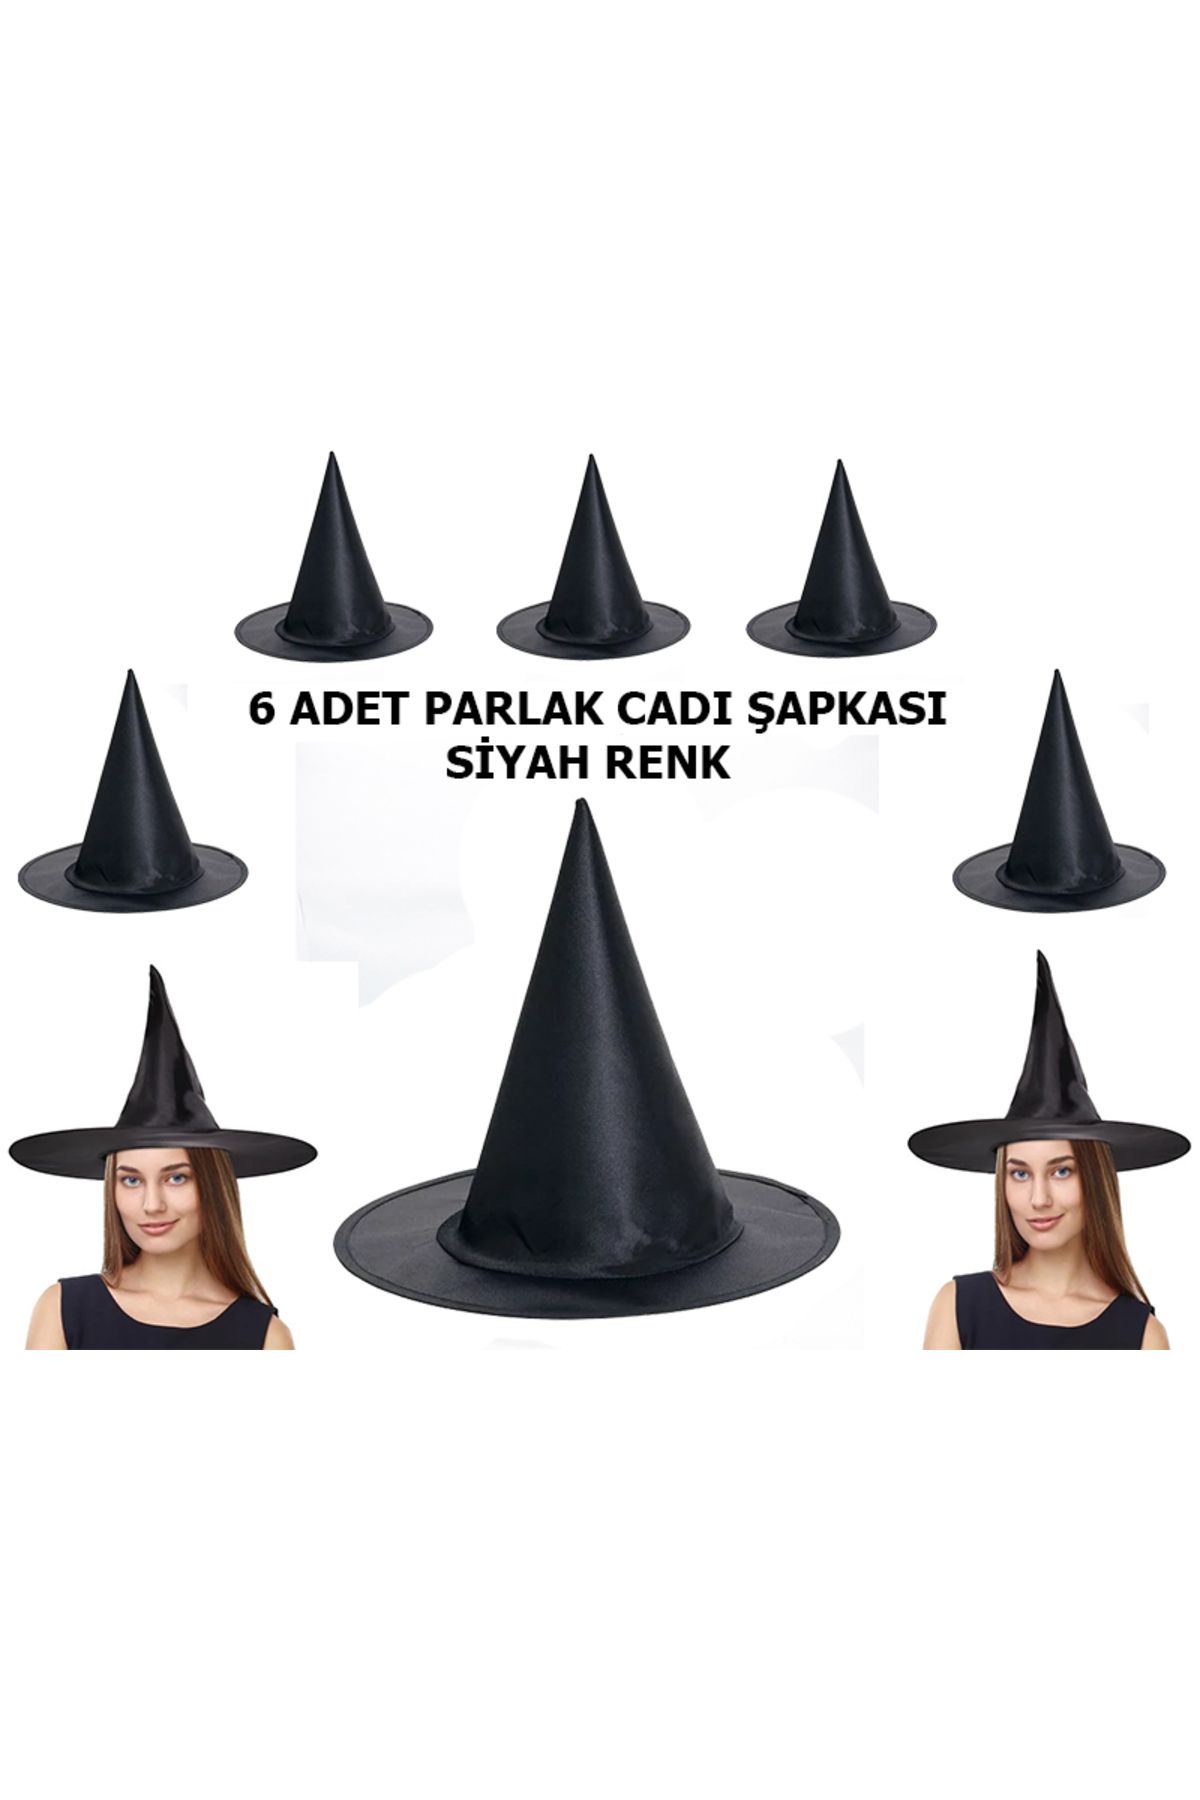 KAYAMU Halloween Siyah Renk Parlak Dralon Cadı Şapkası Yetişkin ve Çocuk Uyumlu 6 Adet (K0)